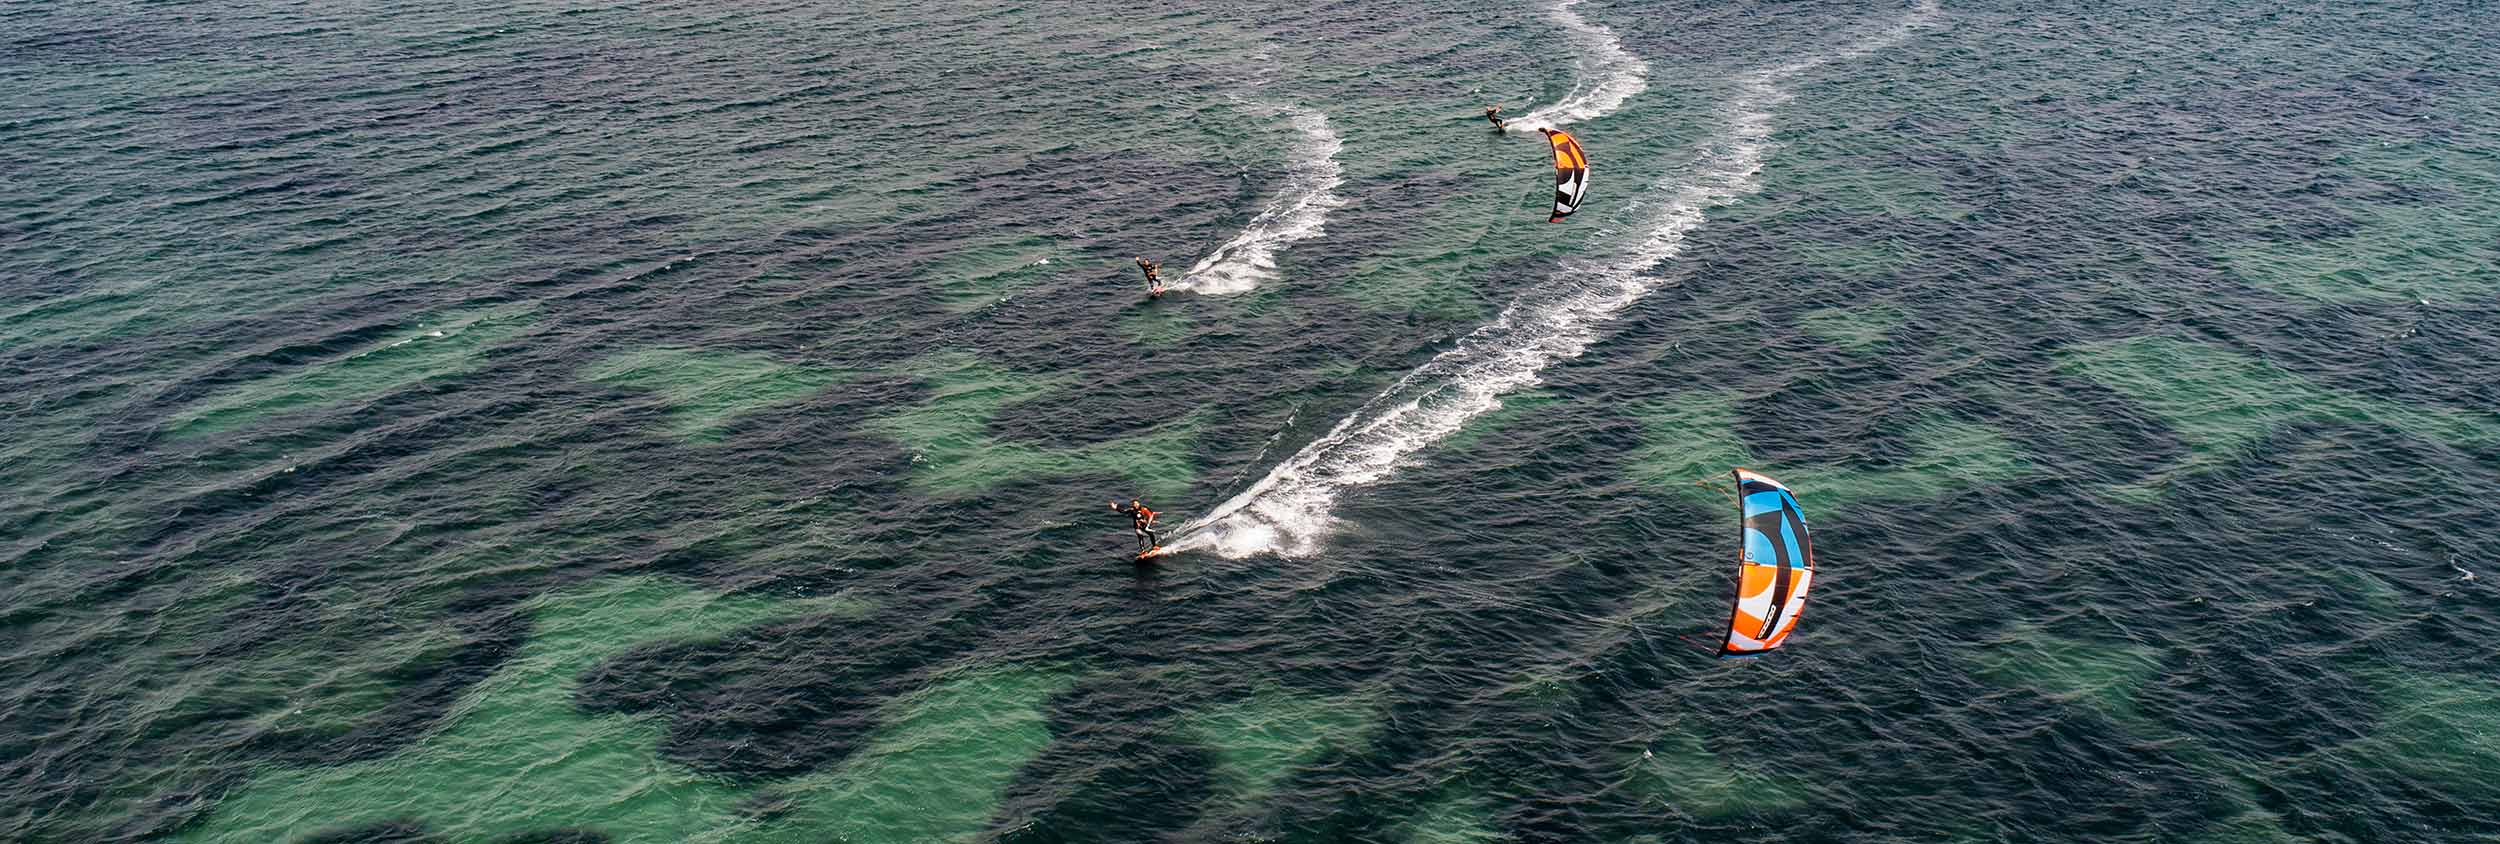 Kitesurfing, Sant Antioco, Sardinia